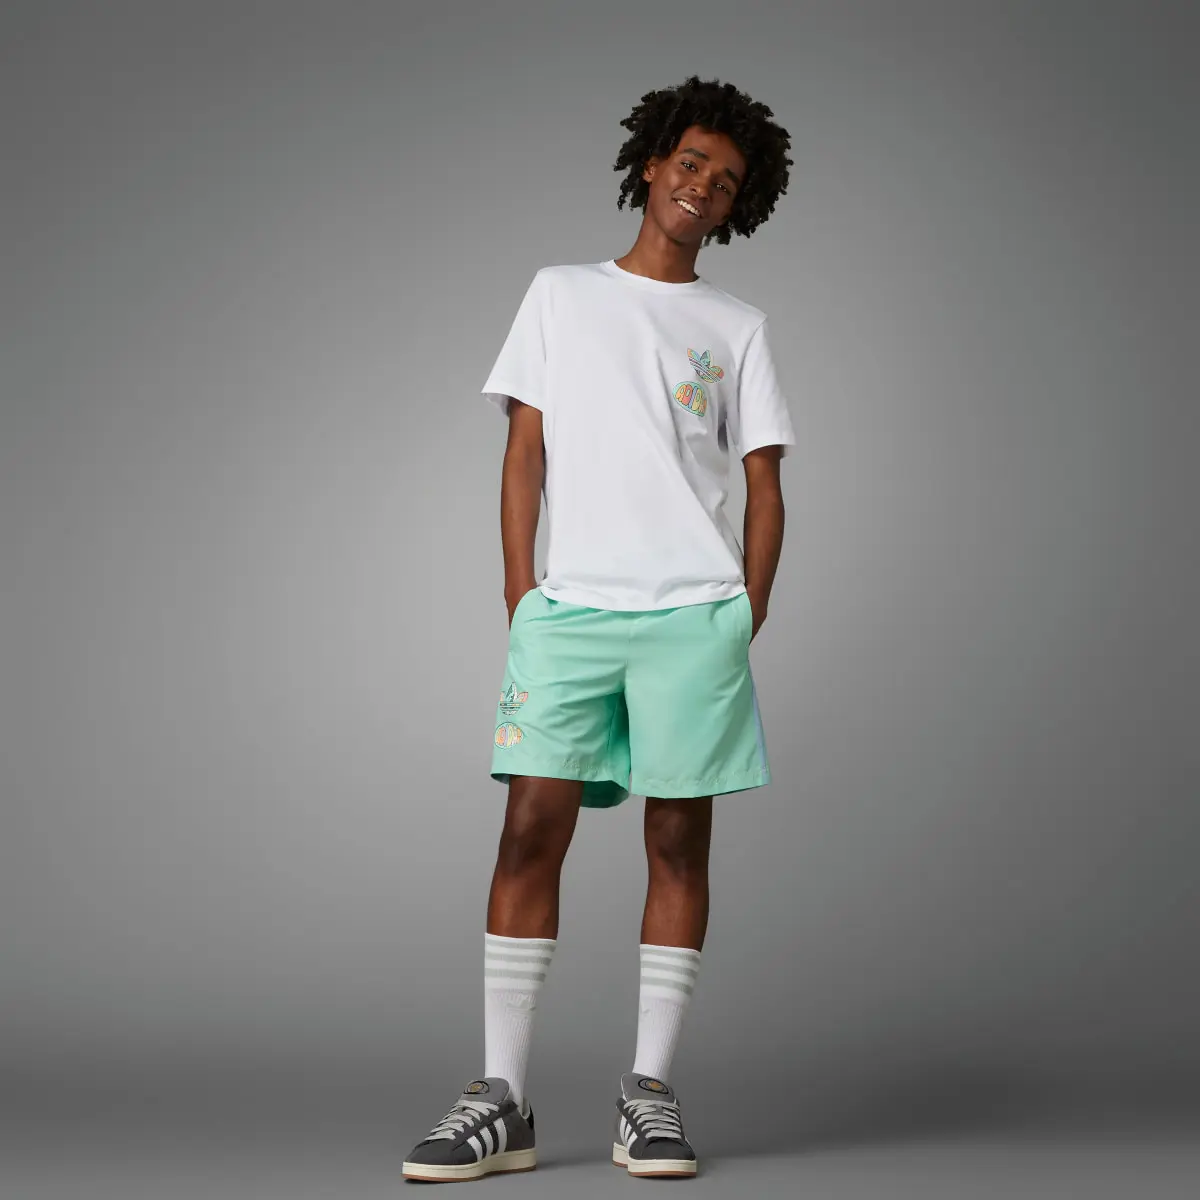 Adidas T-shirt avec graphisme avant/arrière Enjoy Summer. 3